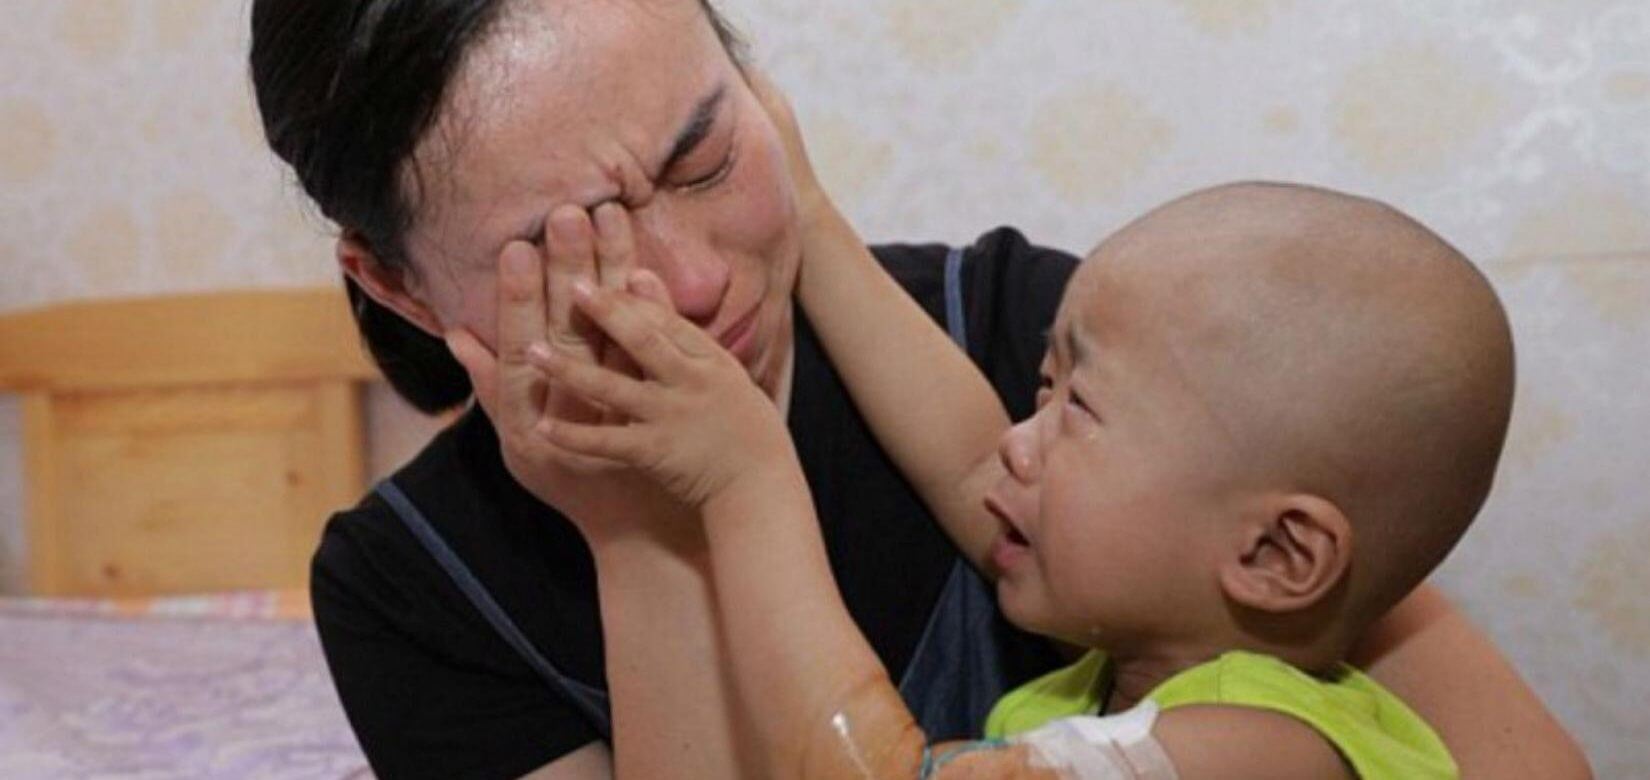 Συγκλονιστική στιγμή: 3χρονο αγοράκι με καρκίνο παρηγορεί την μητέρα του (βίντεο)